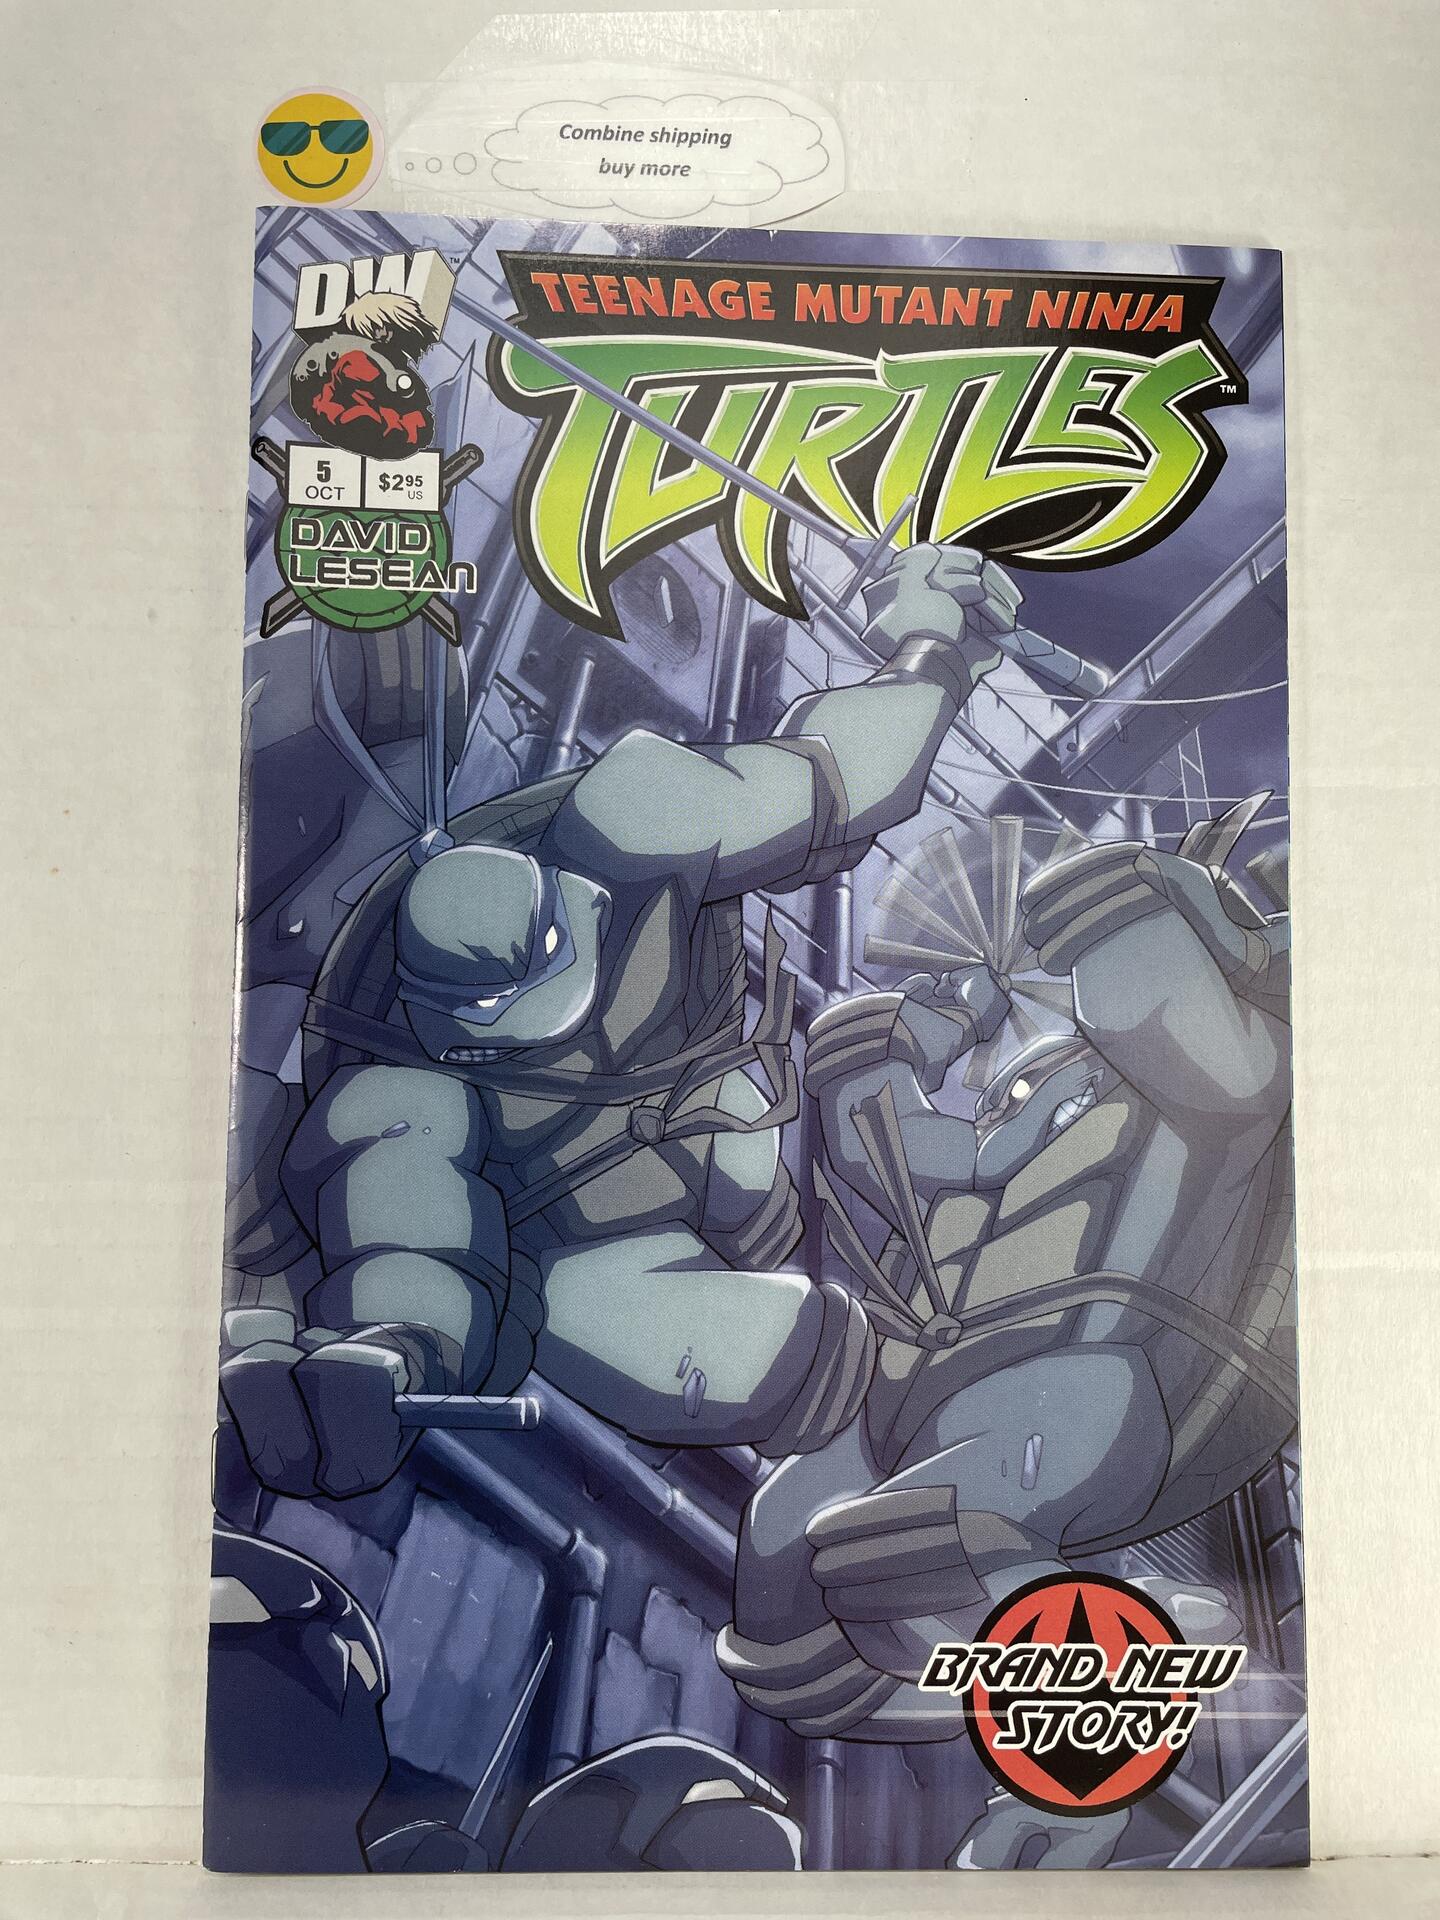 Teenage Mutant Ninja Turtles 5vol 1 Dream Wave Productions Tmnt Comic Books Modern Age 